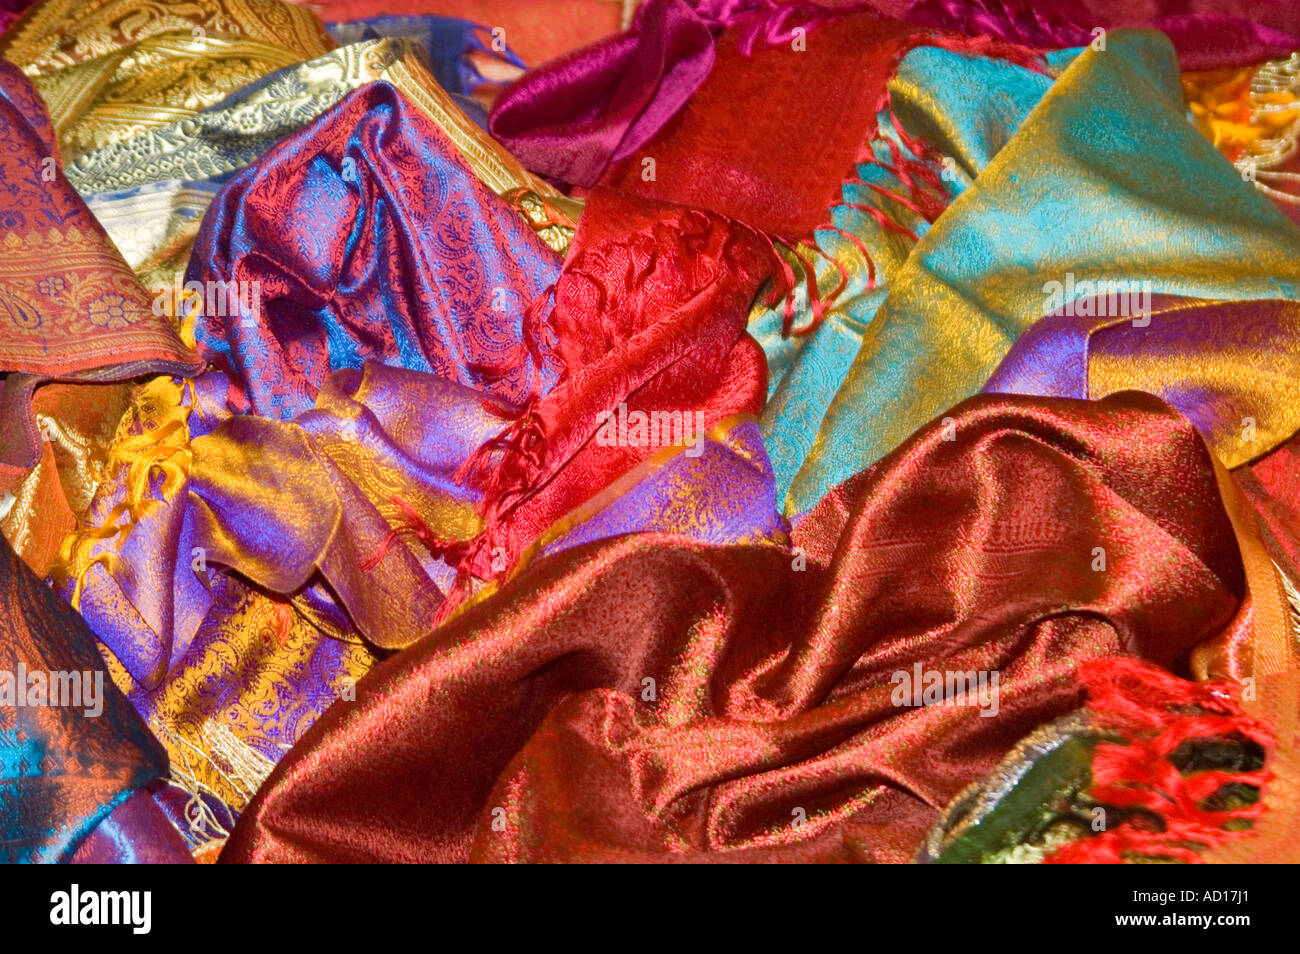 En Uttar Pradesh, India Varanasi de abril de 2006. Cierre horizontal de coloridos saris de seda esparcidos por todo el suelo de una tienda Foto de stock